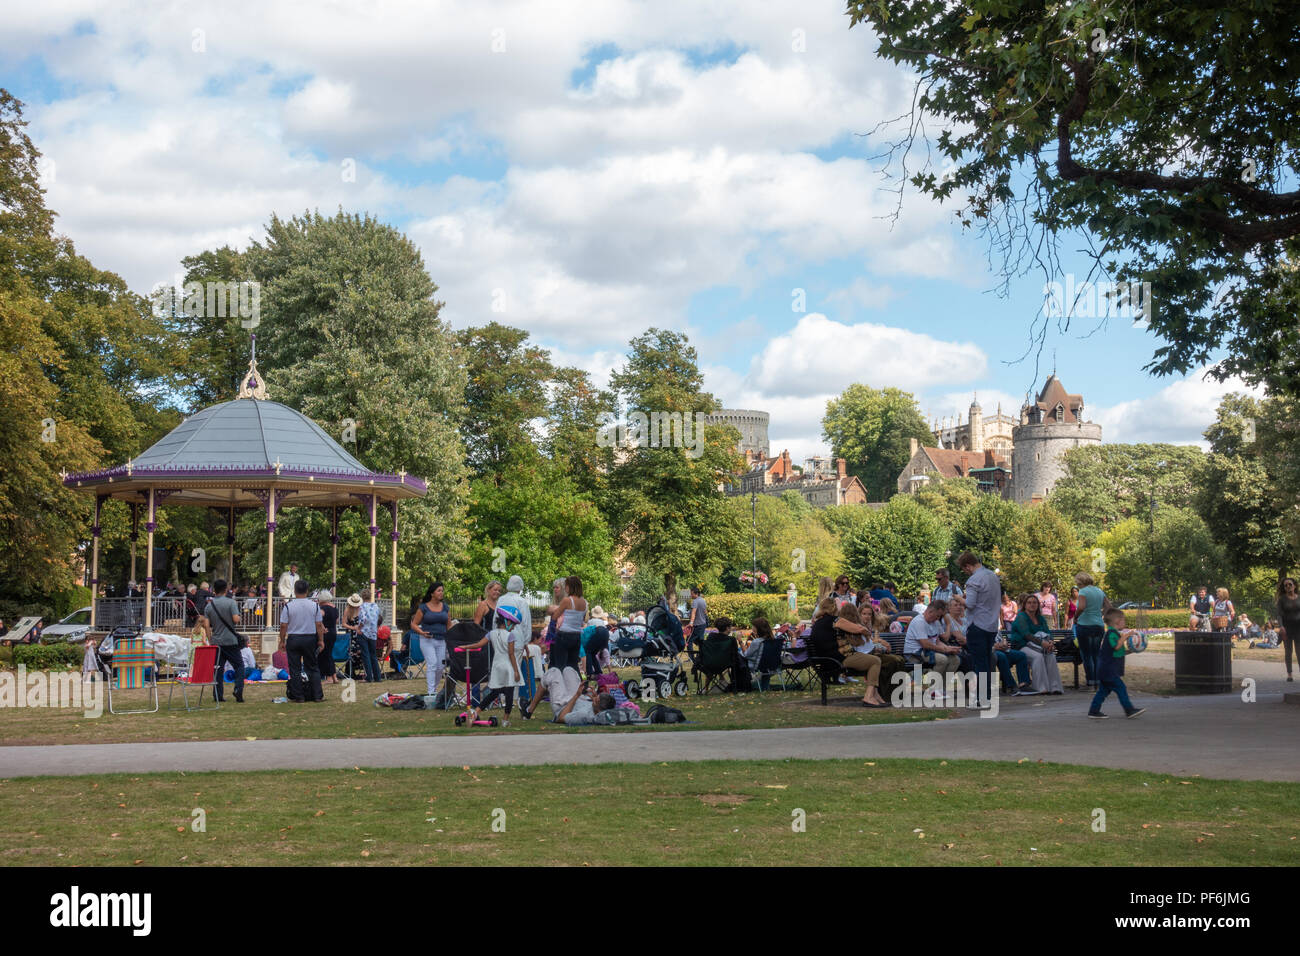 Una band suona un concerto gratuito nella band stand in giardini Alexandra in Windsor, Regno Unito. Persone sedersi su sedie pieghevoli, benchses e il pavimento a guardare. Foto Stock